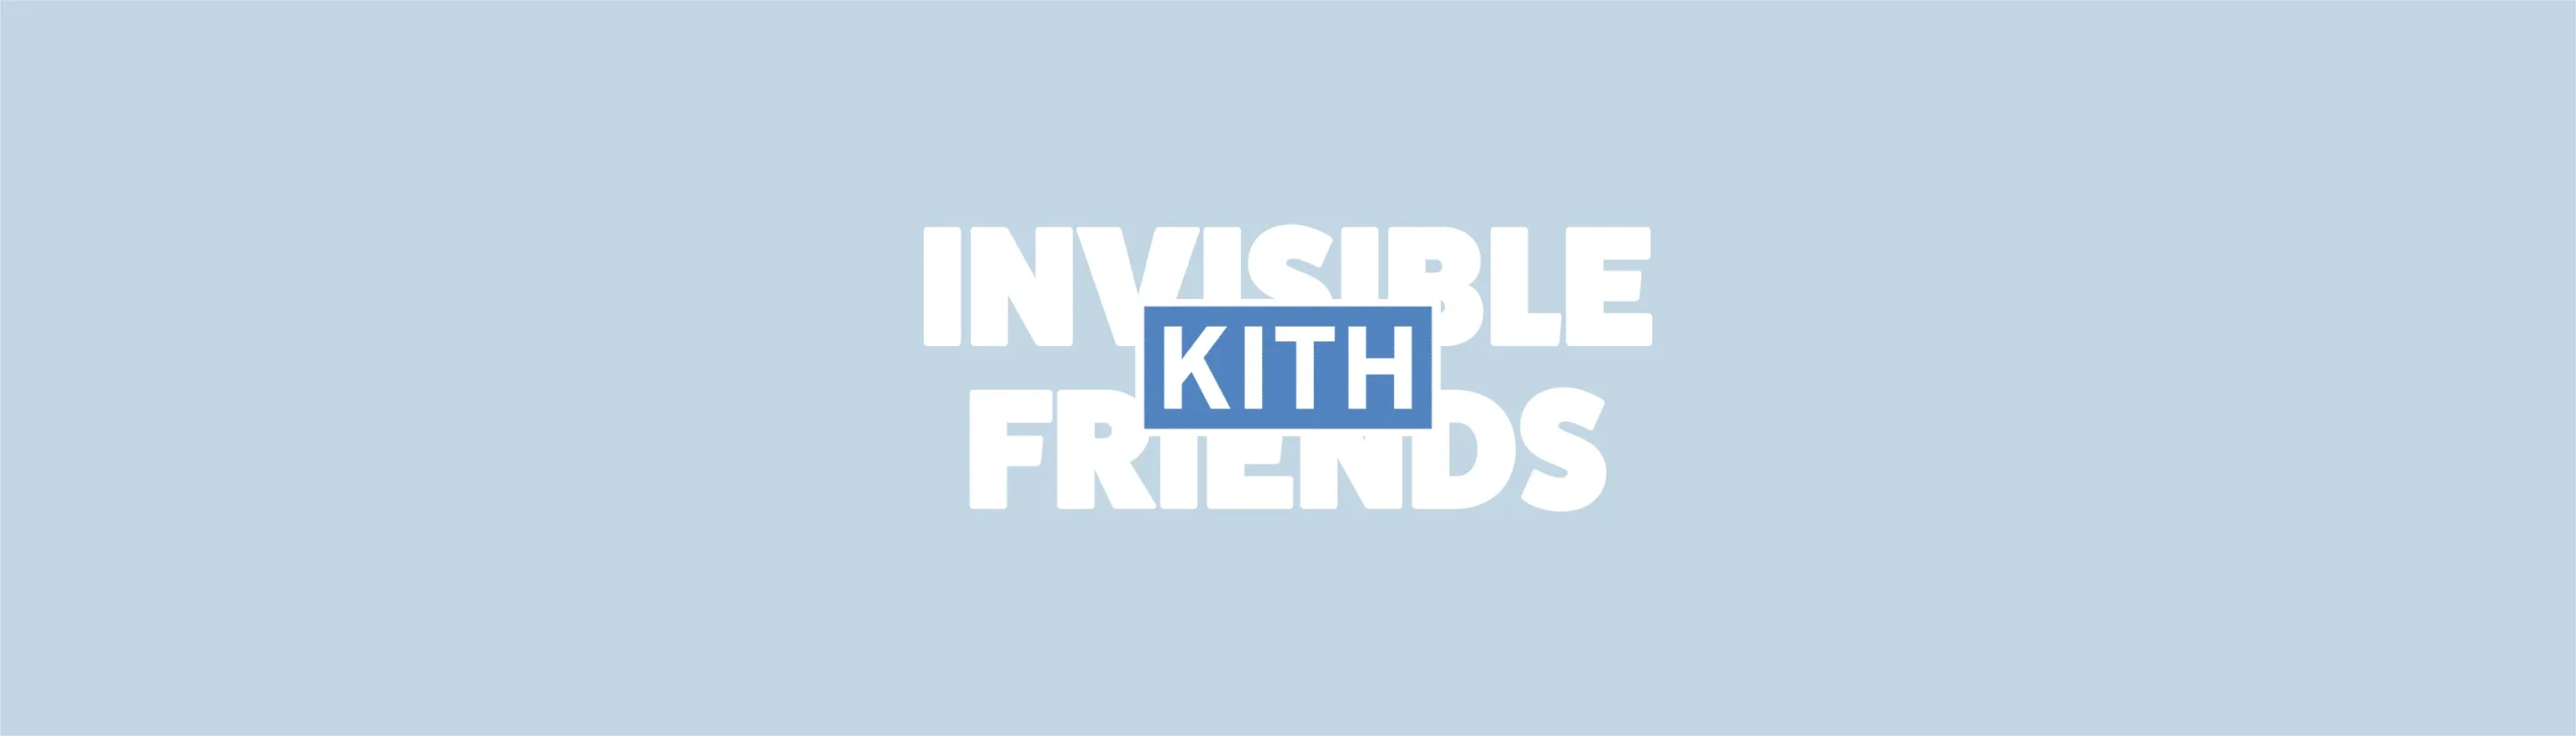 Kith-Friends-Deployer 橫幅